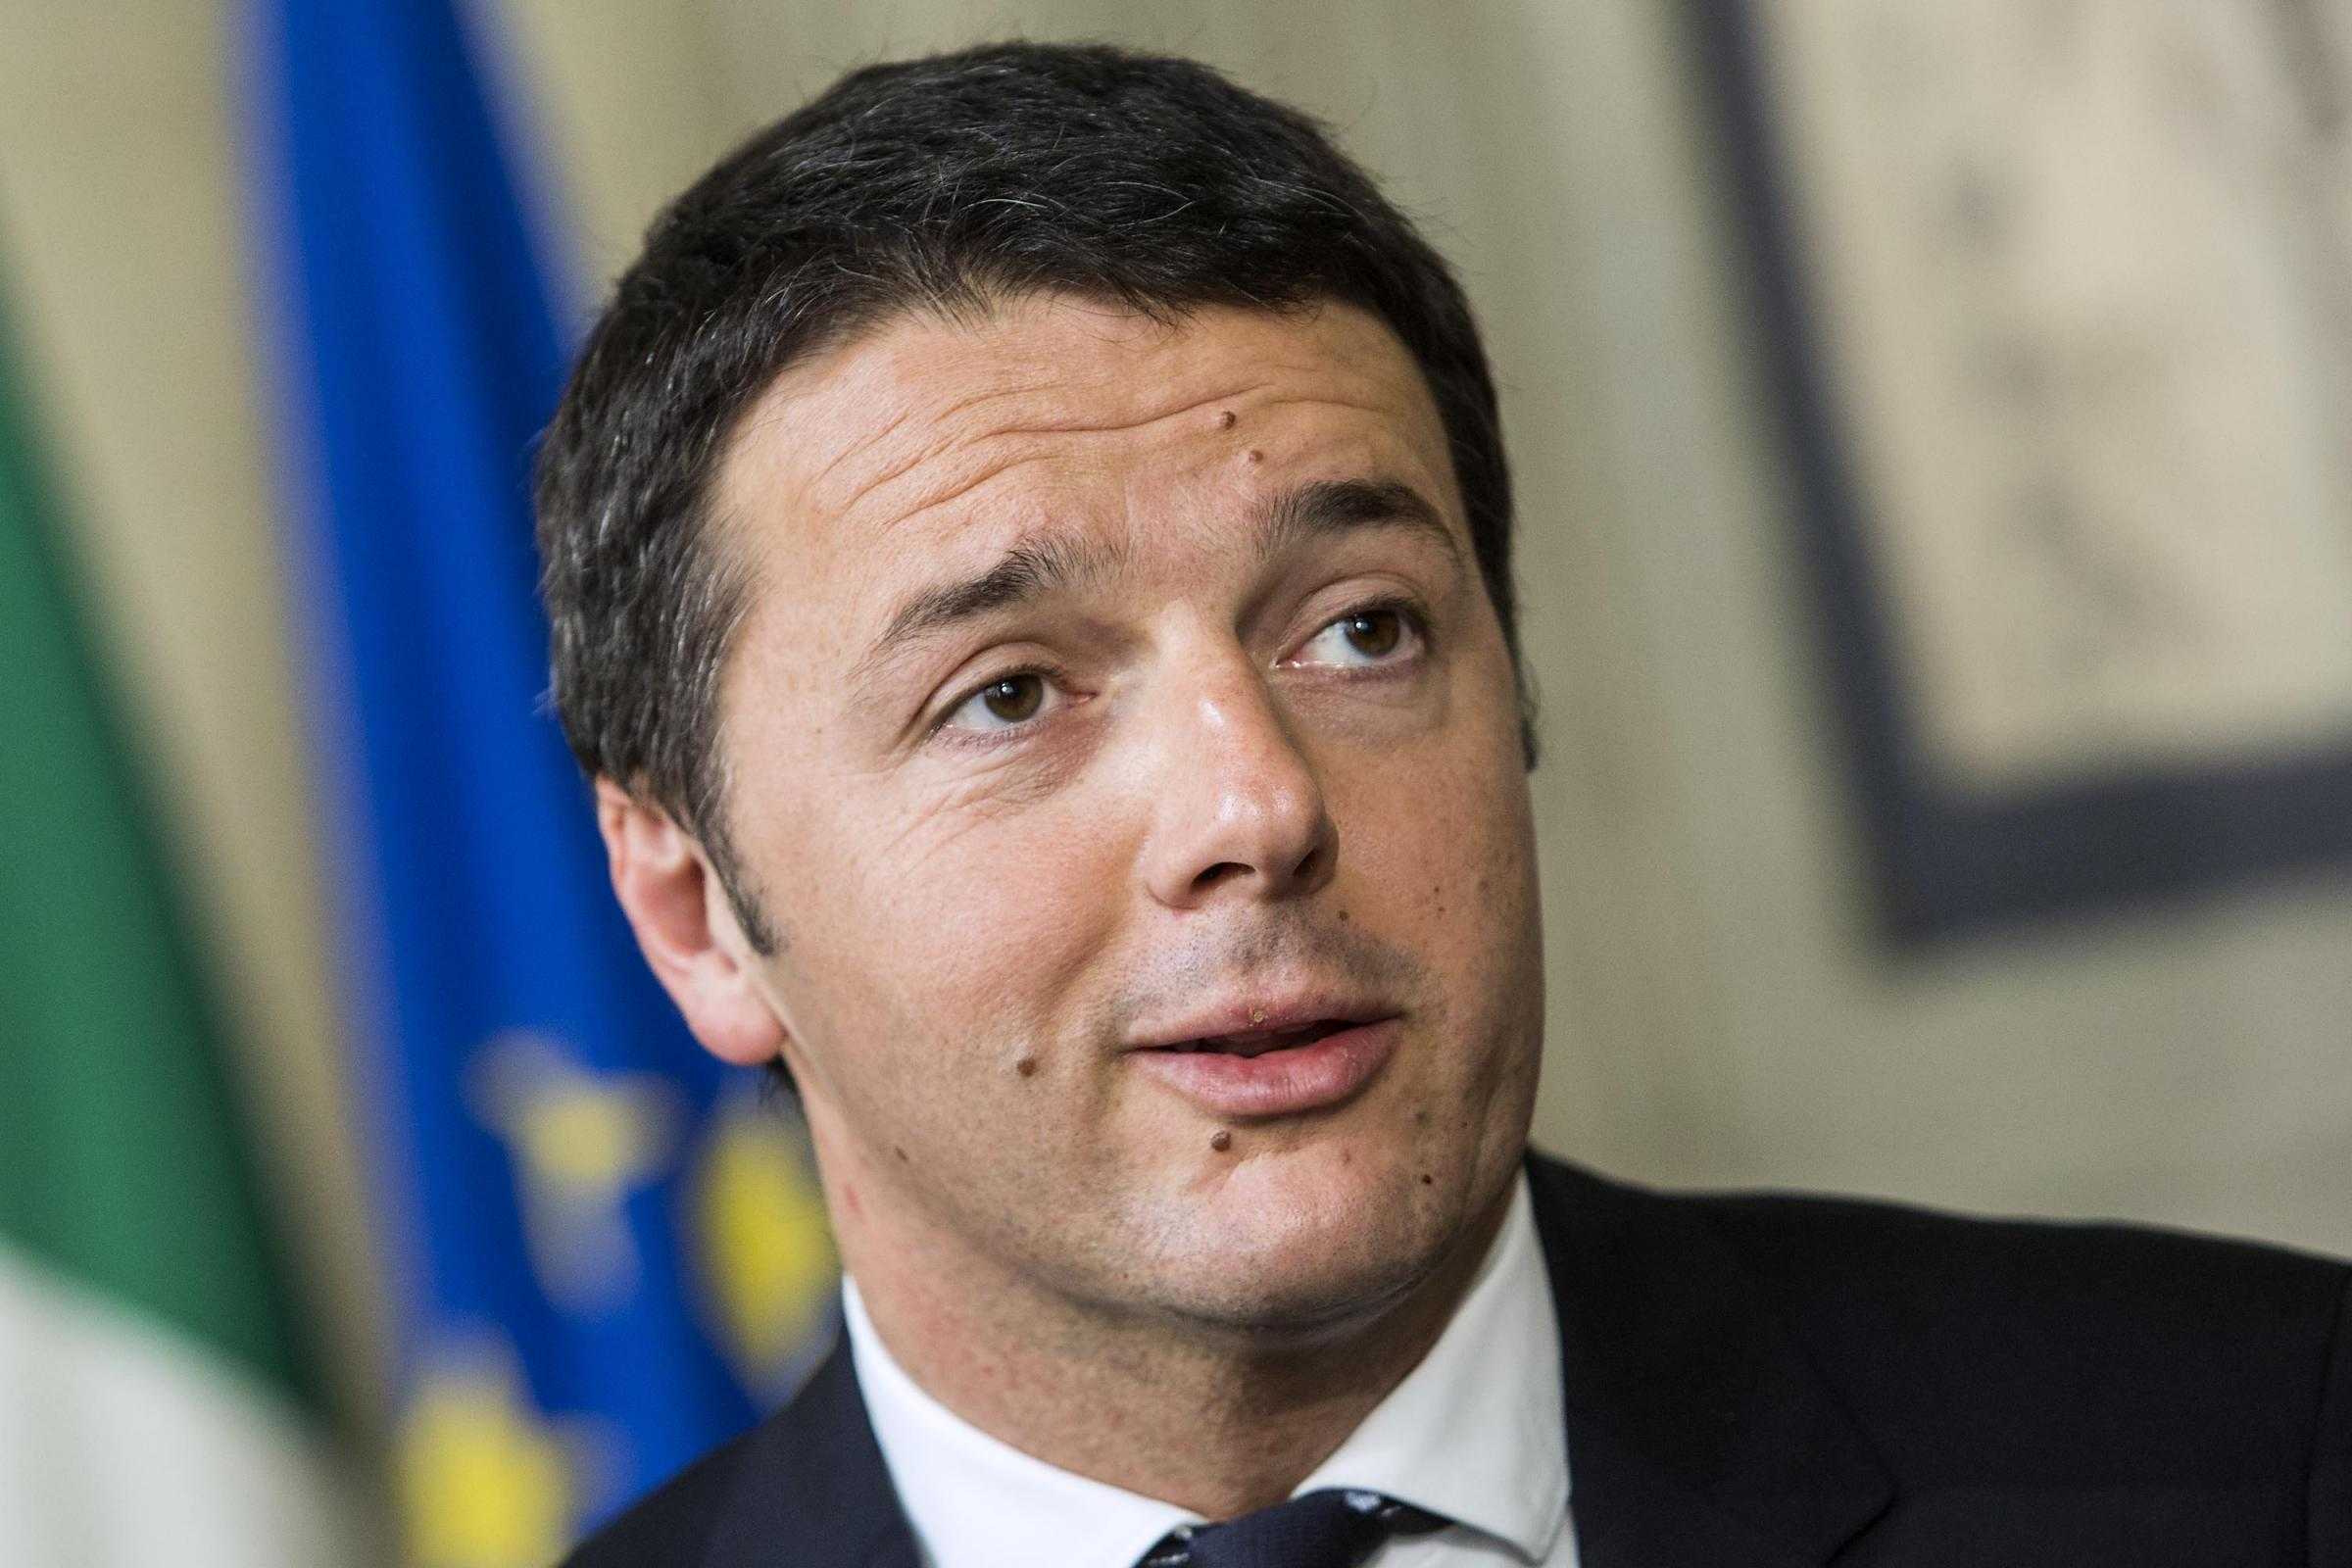 Terremoto, Renzi: "Ricostruiremo i paesi come erano prima e dove erano prima"